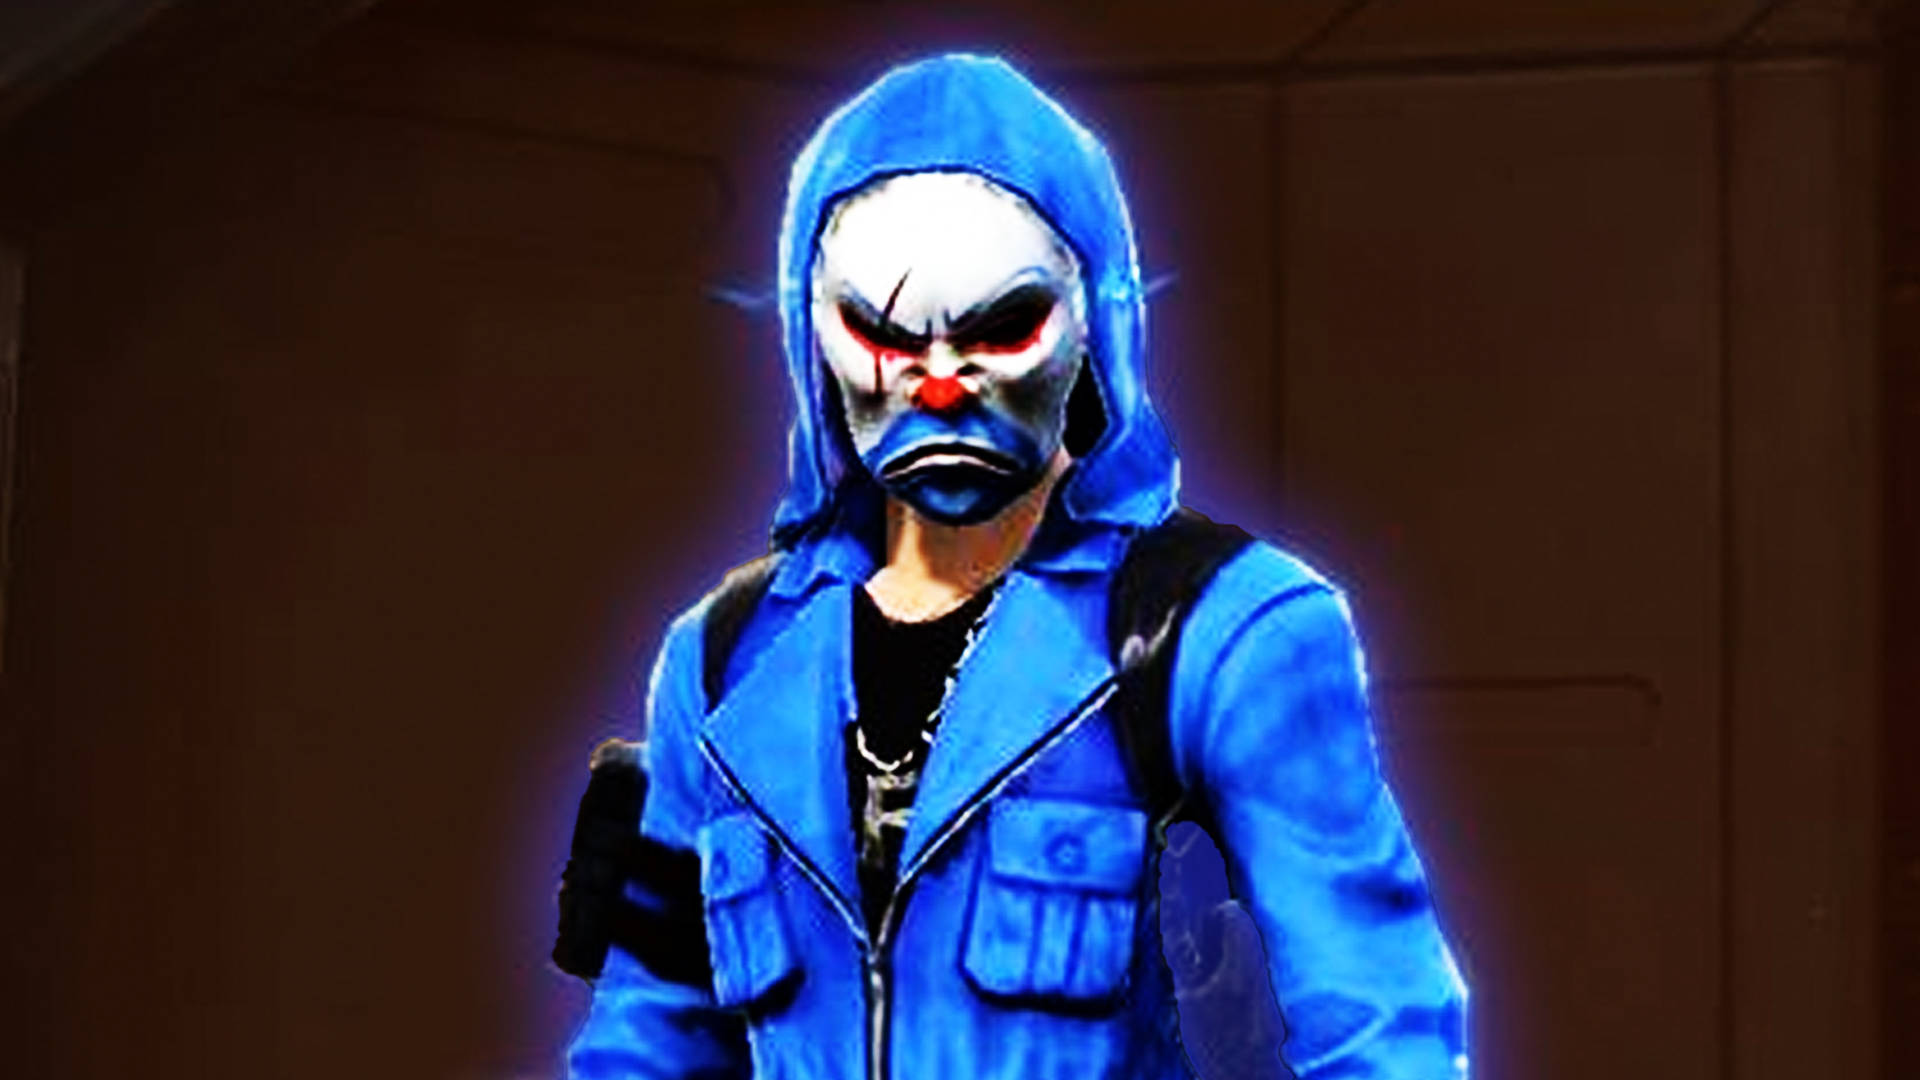 Glowing Blue Criminal Bundle Character Desktop Picture